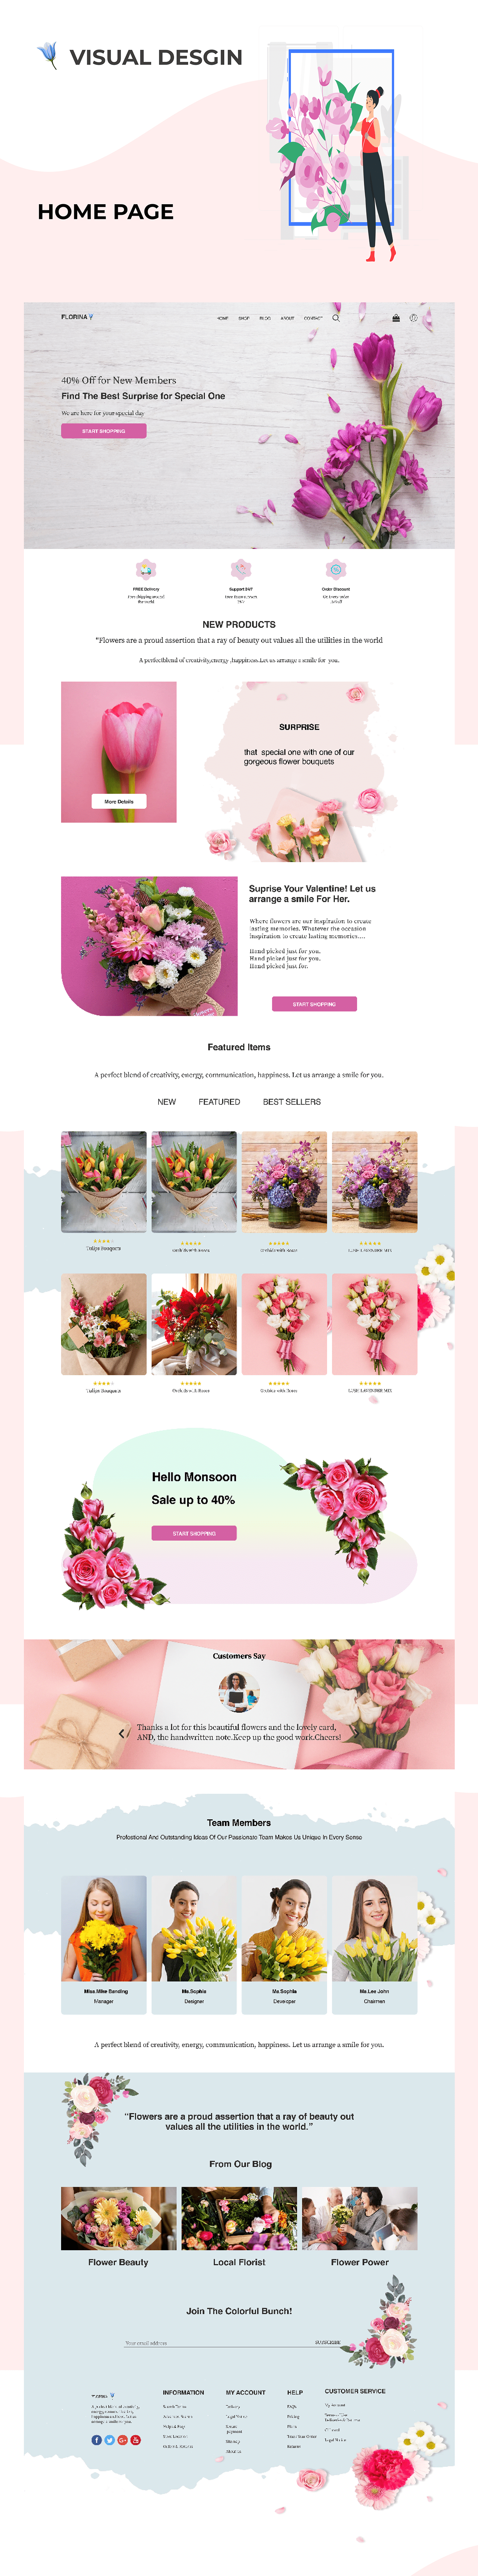 ecomerce website floral flower logo Flower Shop Flowers landing page UI/UX ux Web Design  Website